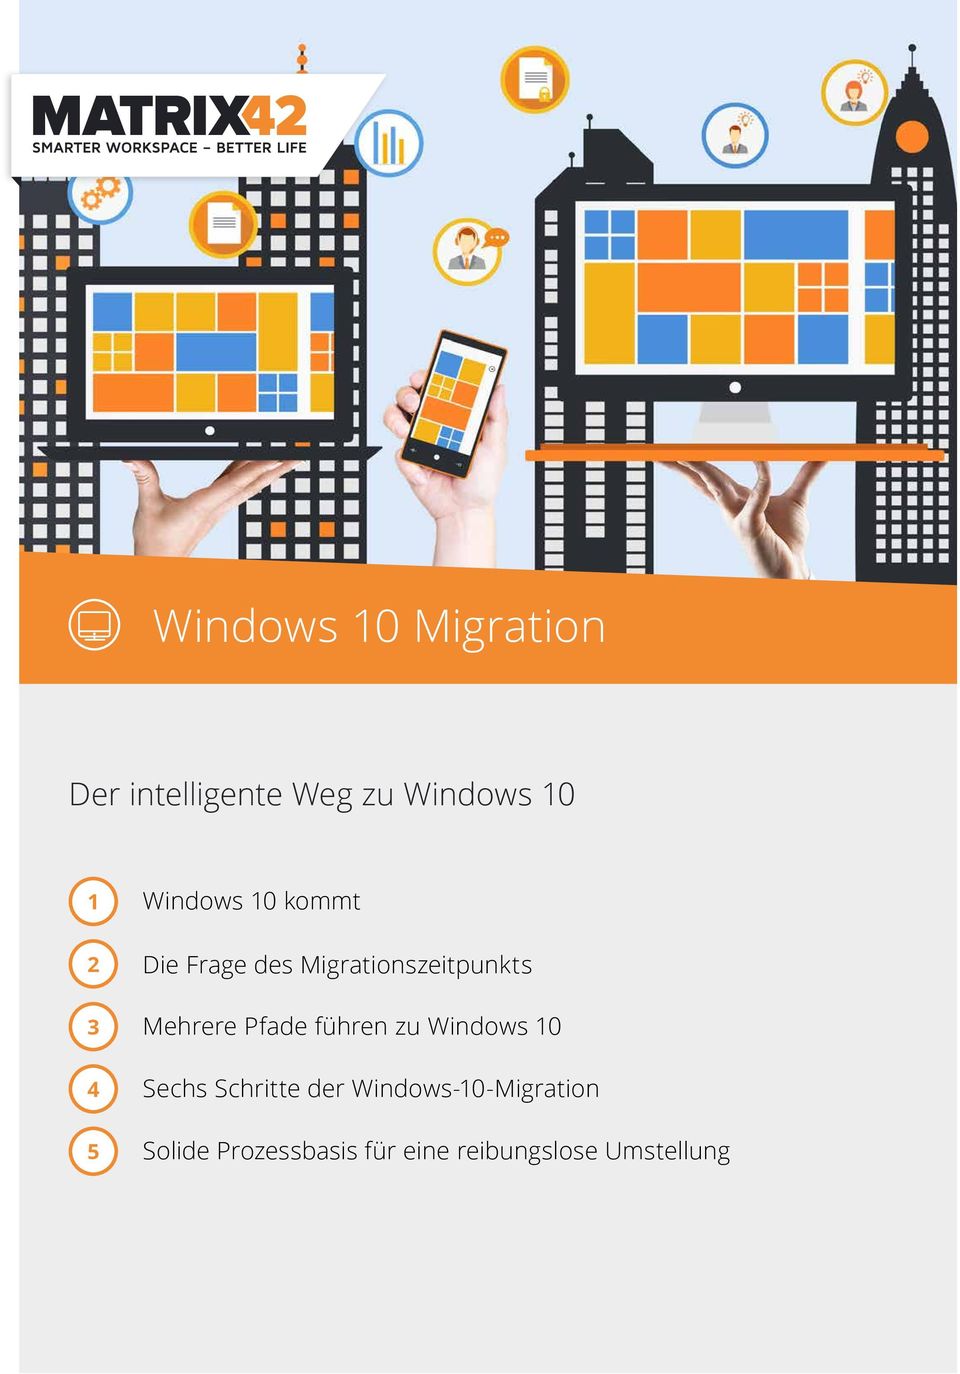 Mehrere Pfade führen zu Windows 10 Sechs Schritte der